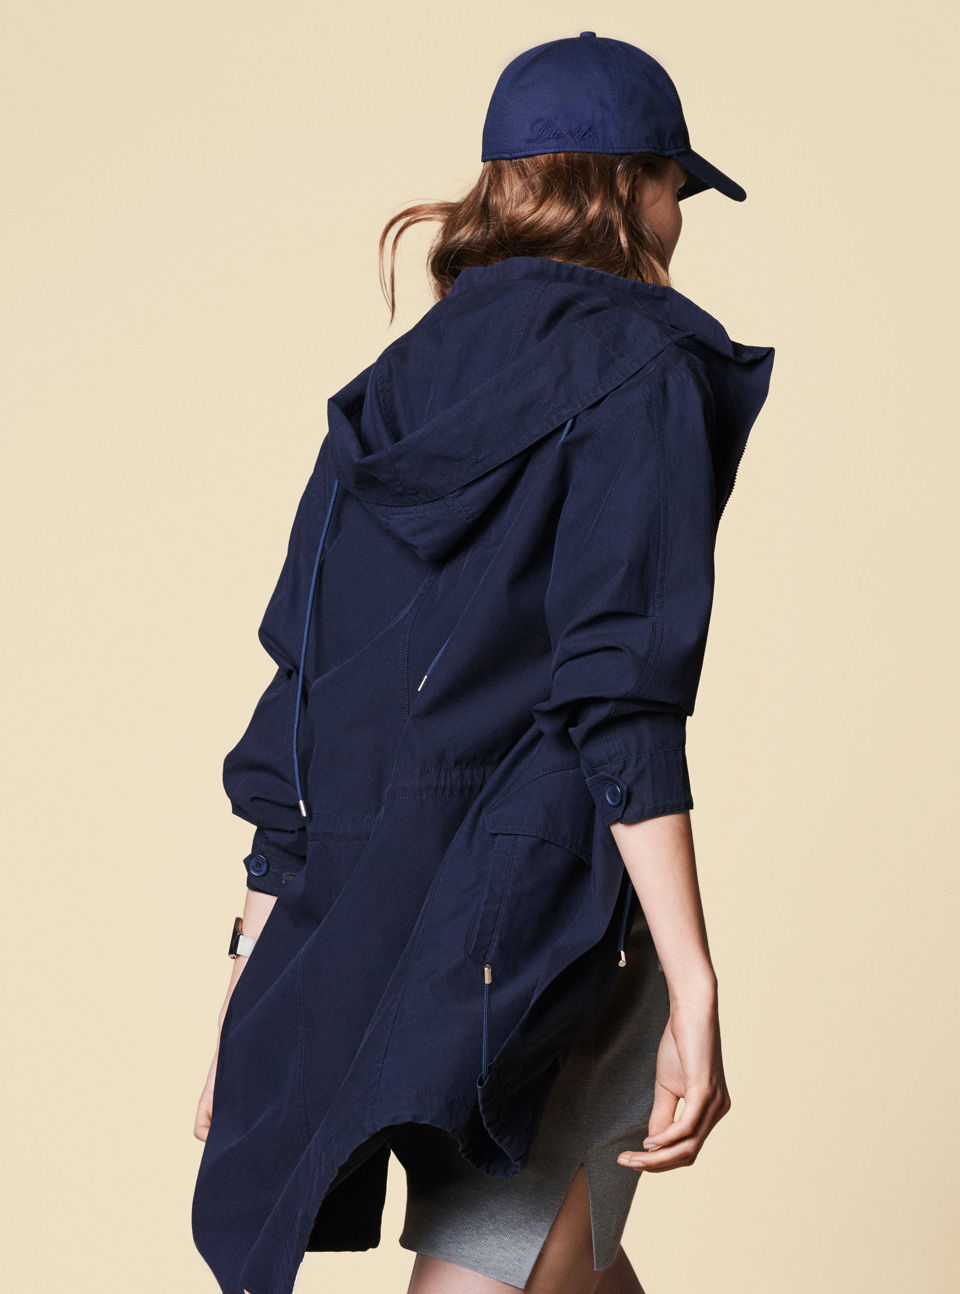 lacoste-ss15-womenswear-15_coleccion